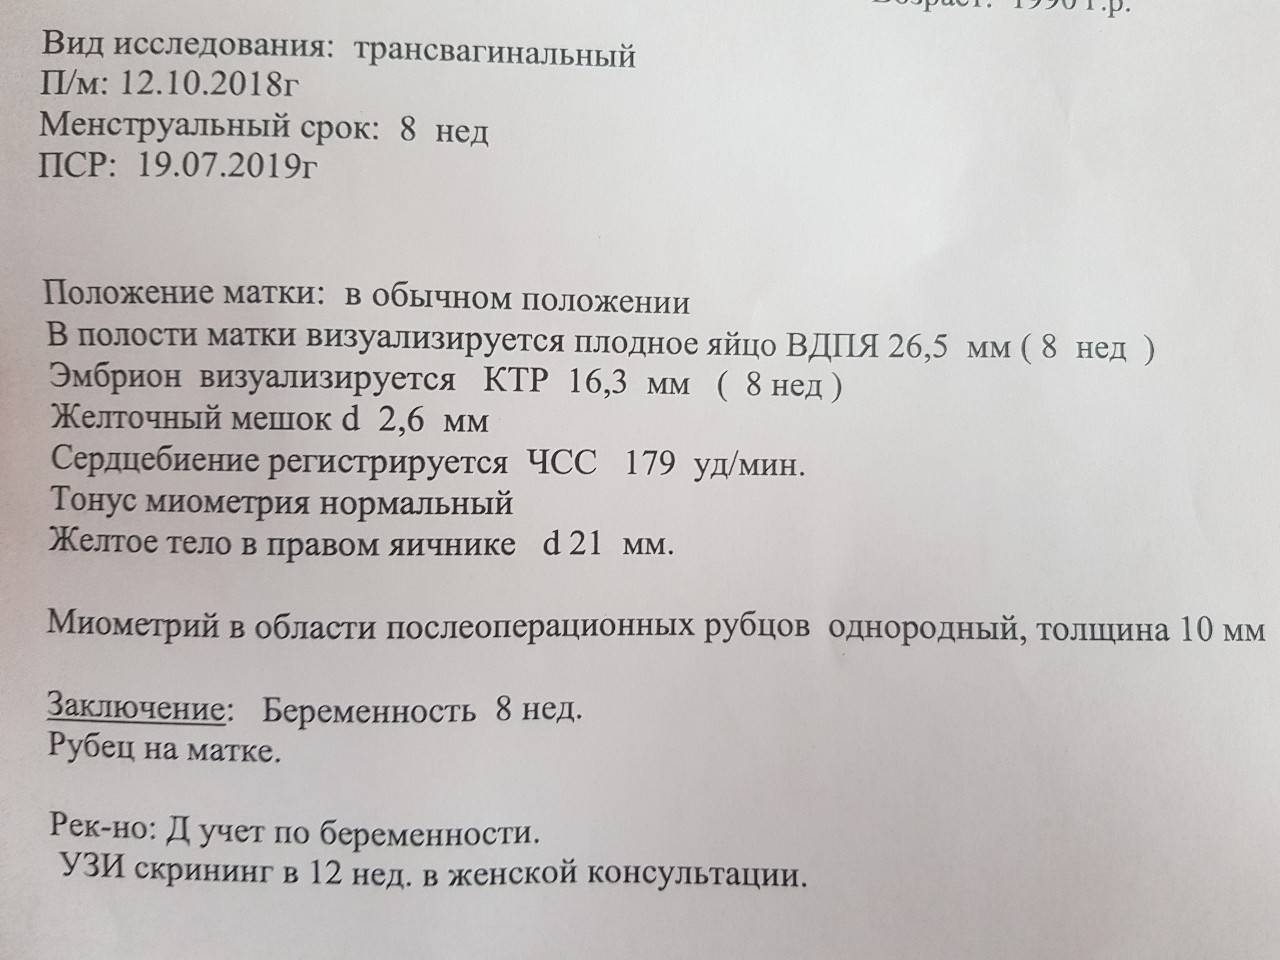 Желточный мешок при беременности: норма, размеры по неделям stomatvrn.ru